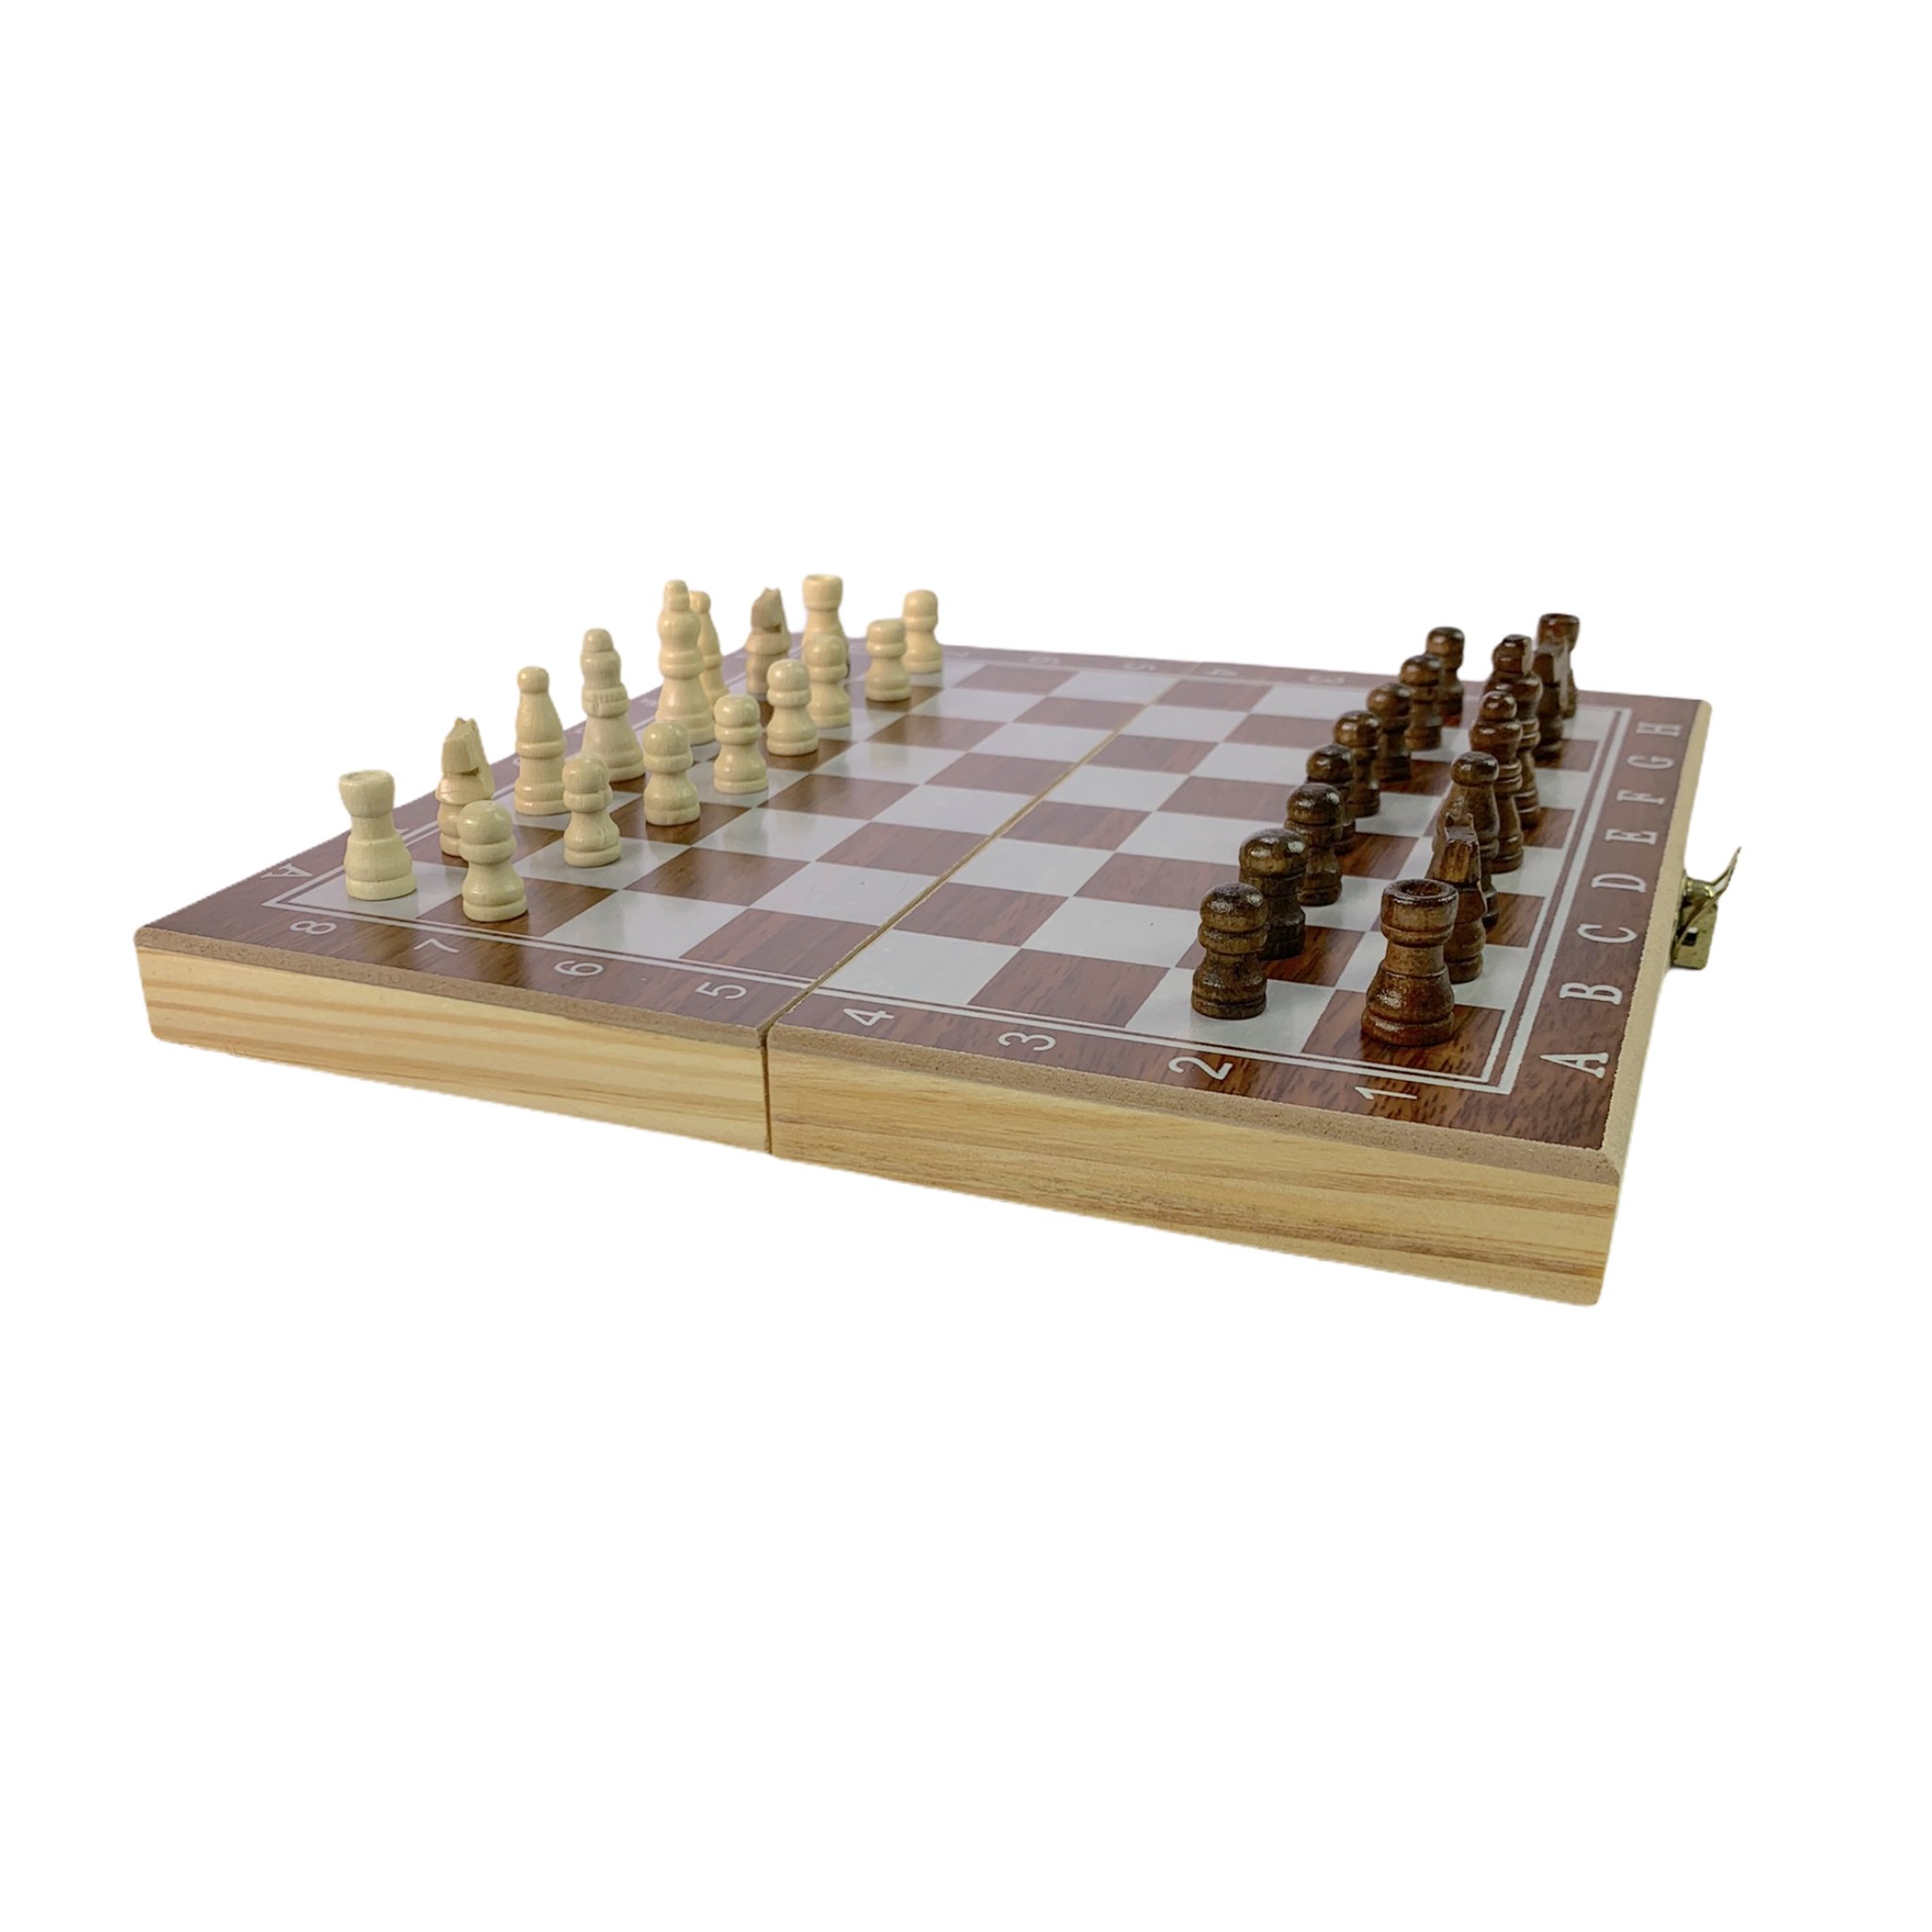 Jogo de xadrez De Madeira 3 Em 1 24 x 24 Cm - CHESS - Jogo de